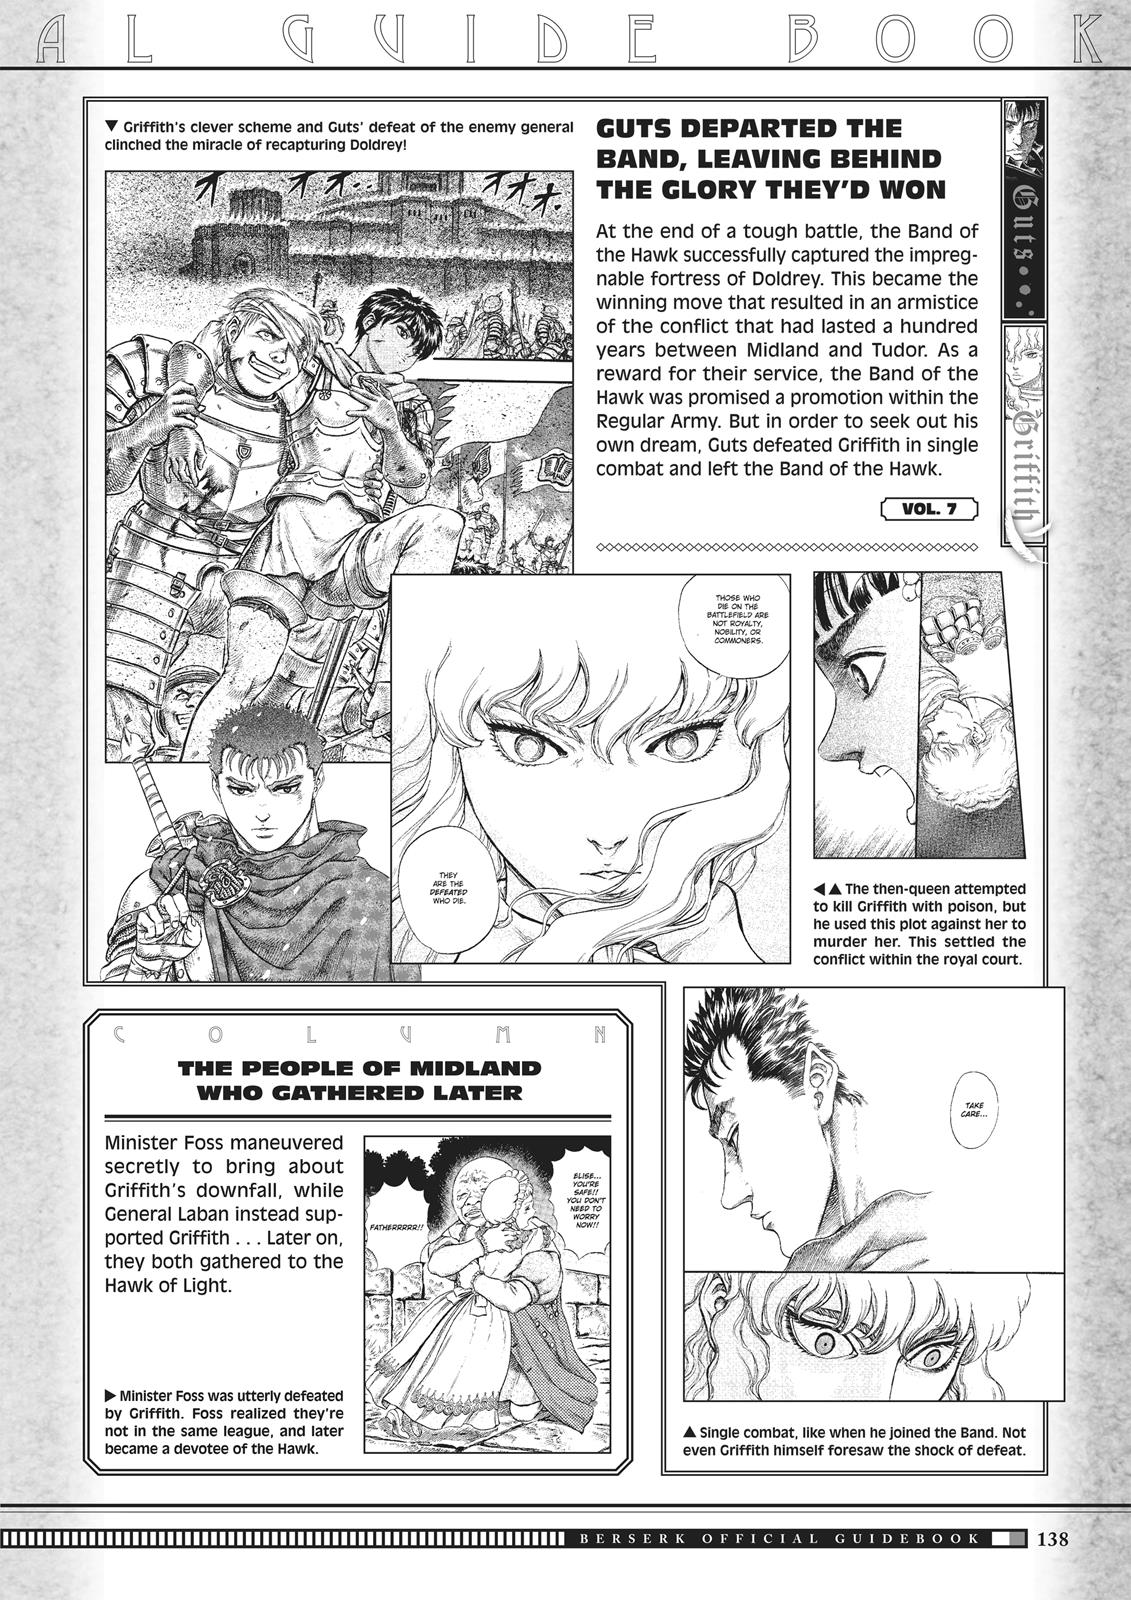 Berserk Manga Chapter 350.5 image 136